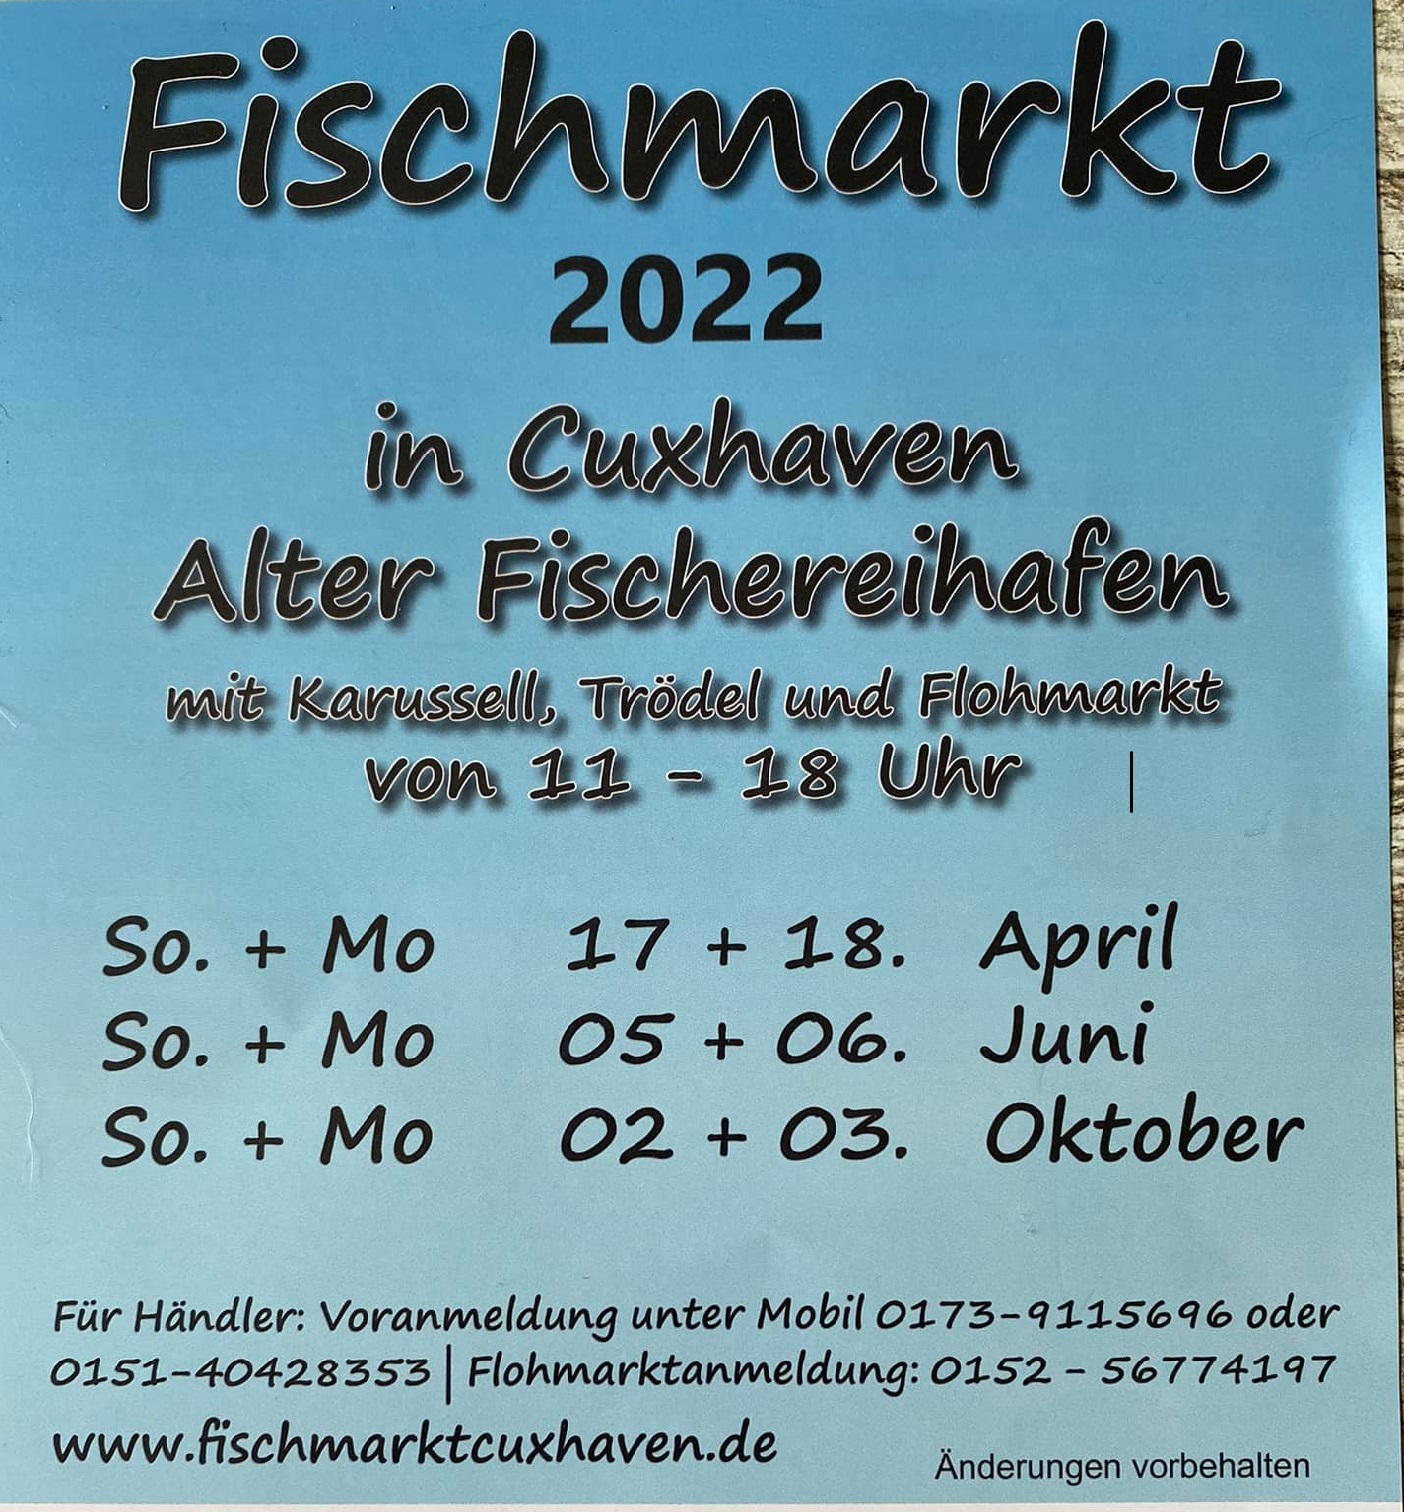 Fischmarkt in Cuxhaven im Jahr 2022